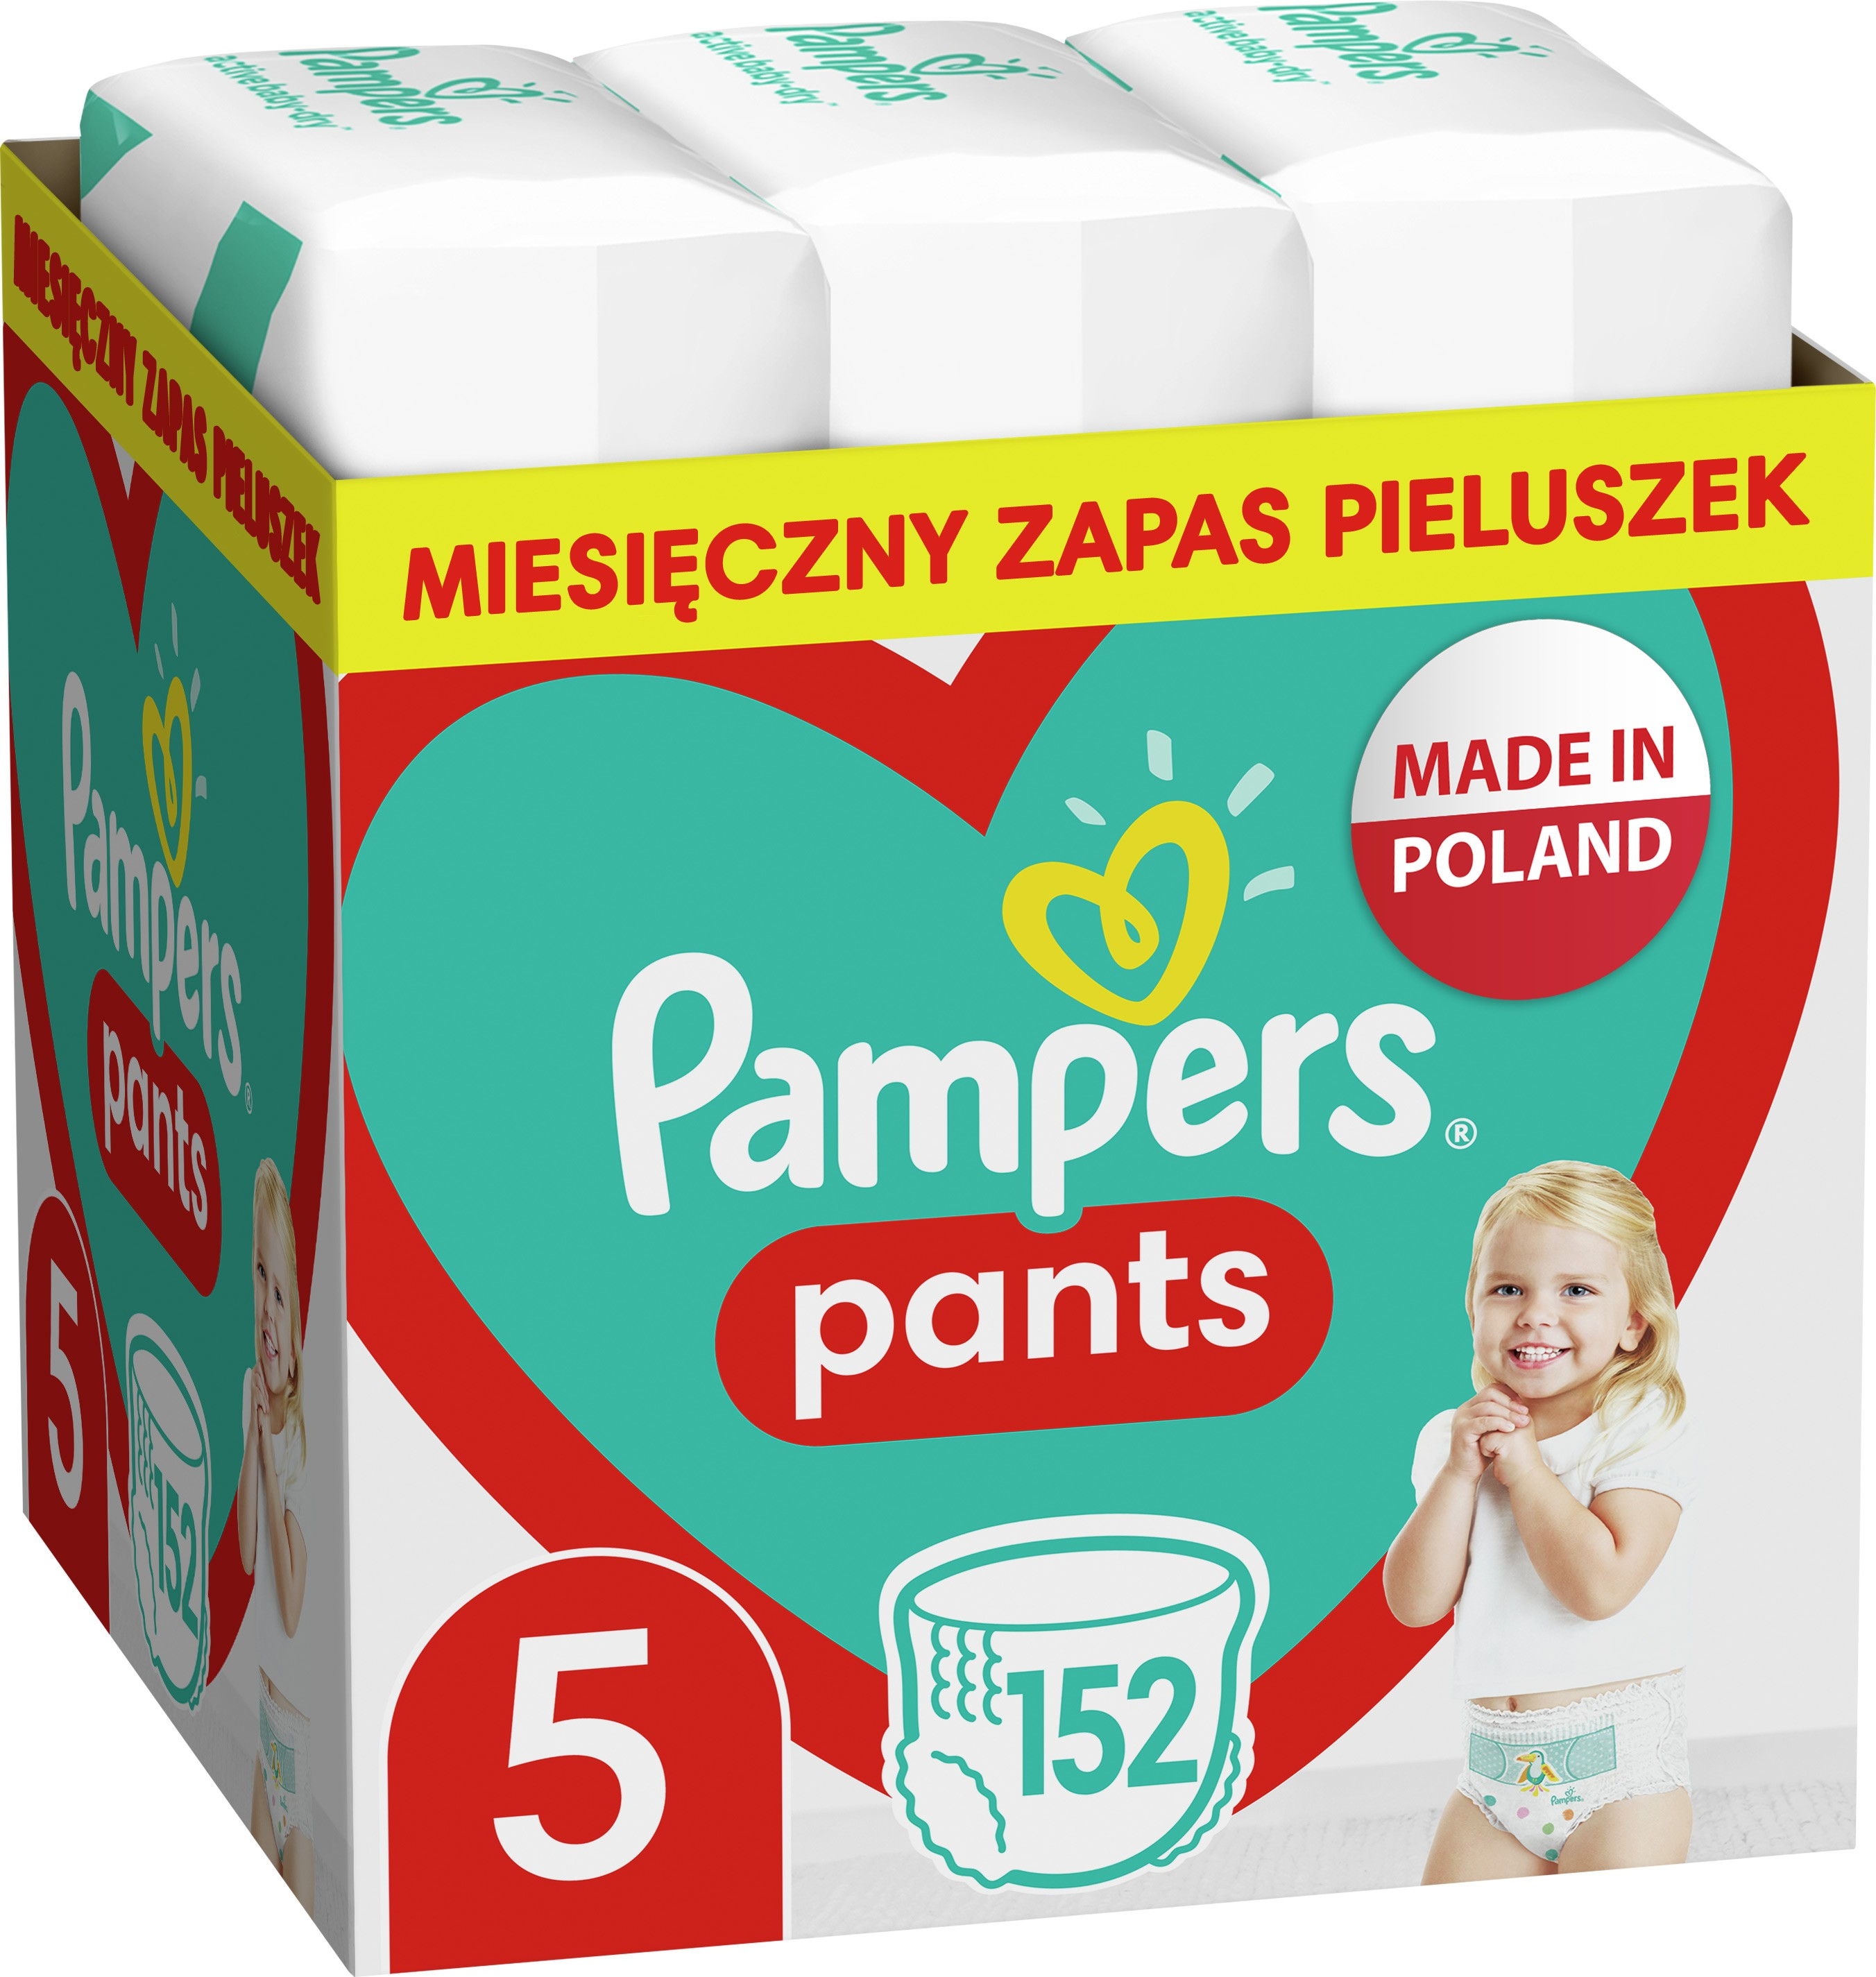 Pampers Pants Boy/Girl 5 152 ks od ninex.cz